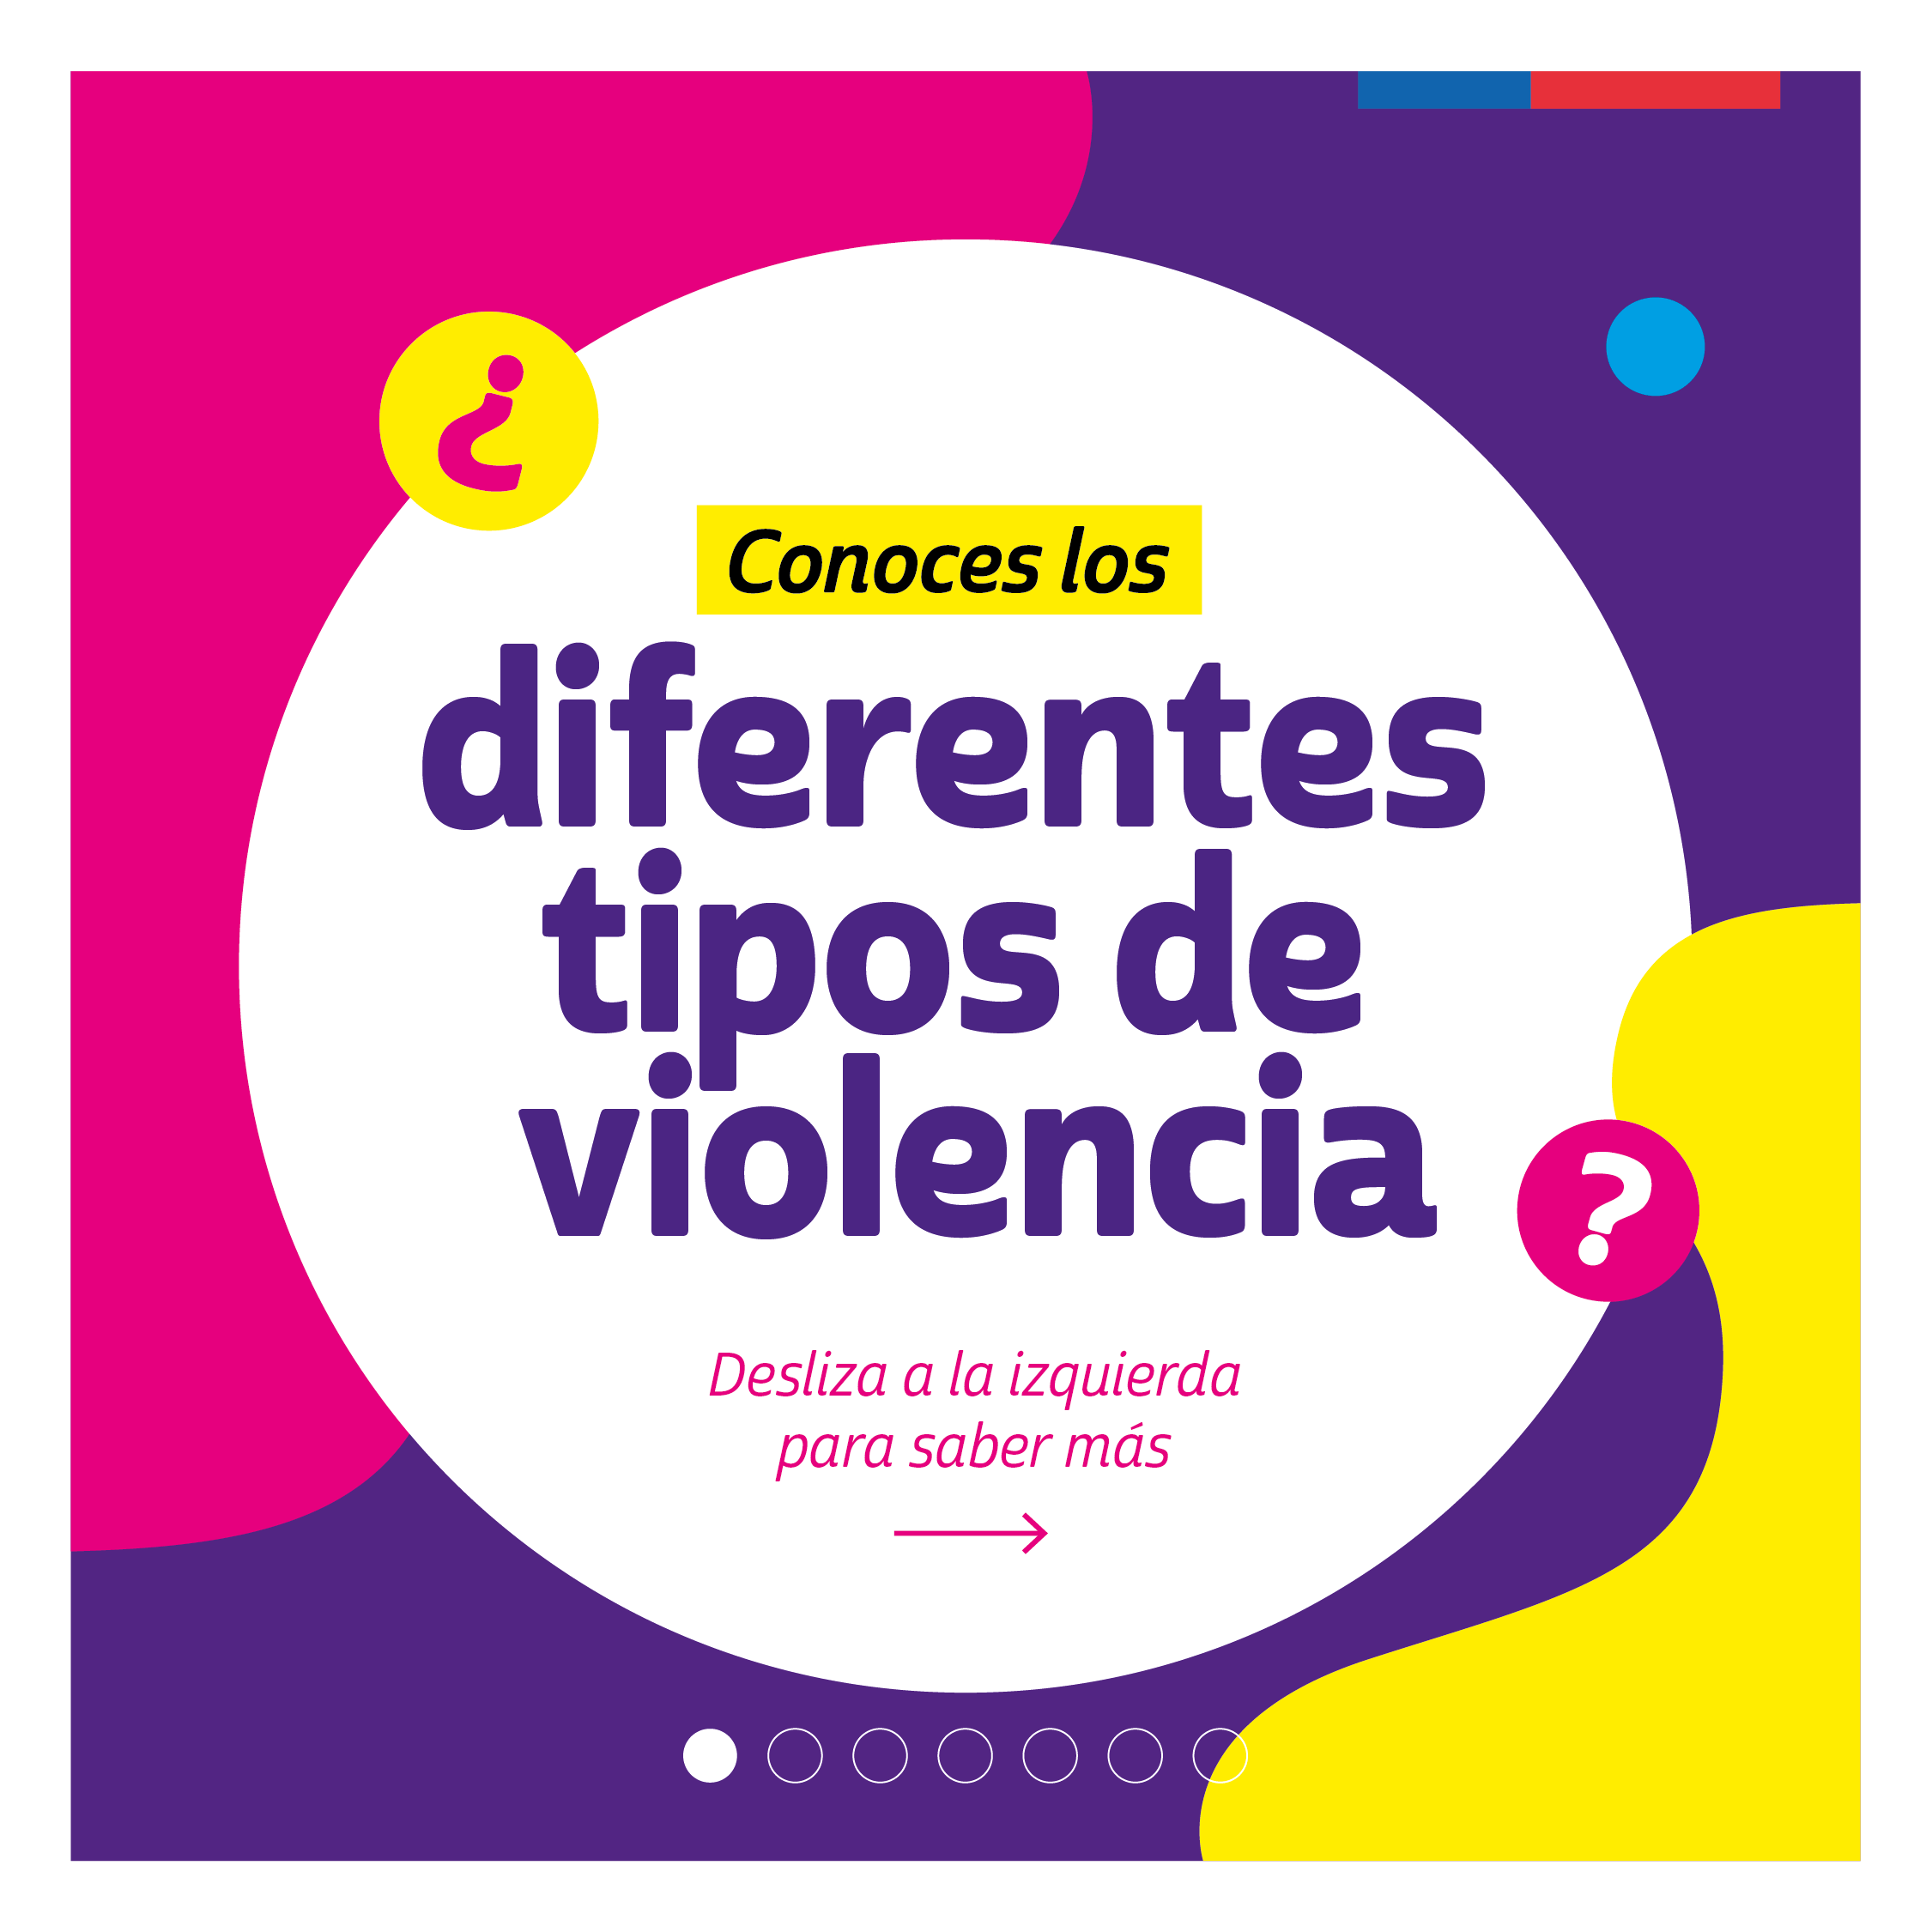 Campaña ¿Conoces los diferentes tipos de Violencia contra la Mujer? - Ministerio de la Mujer y Equidad de género